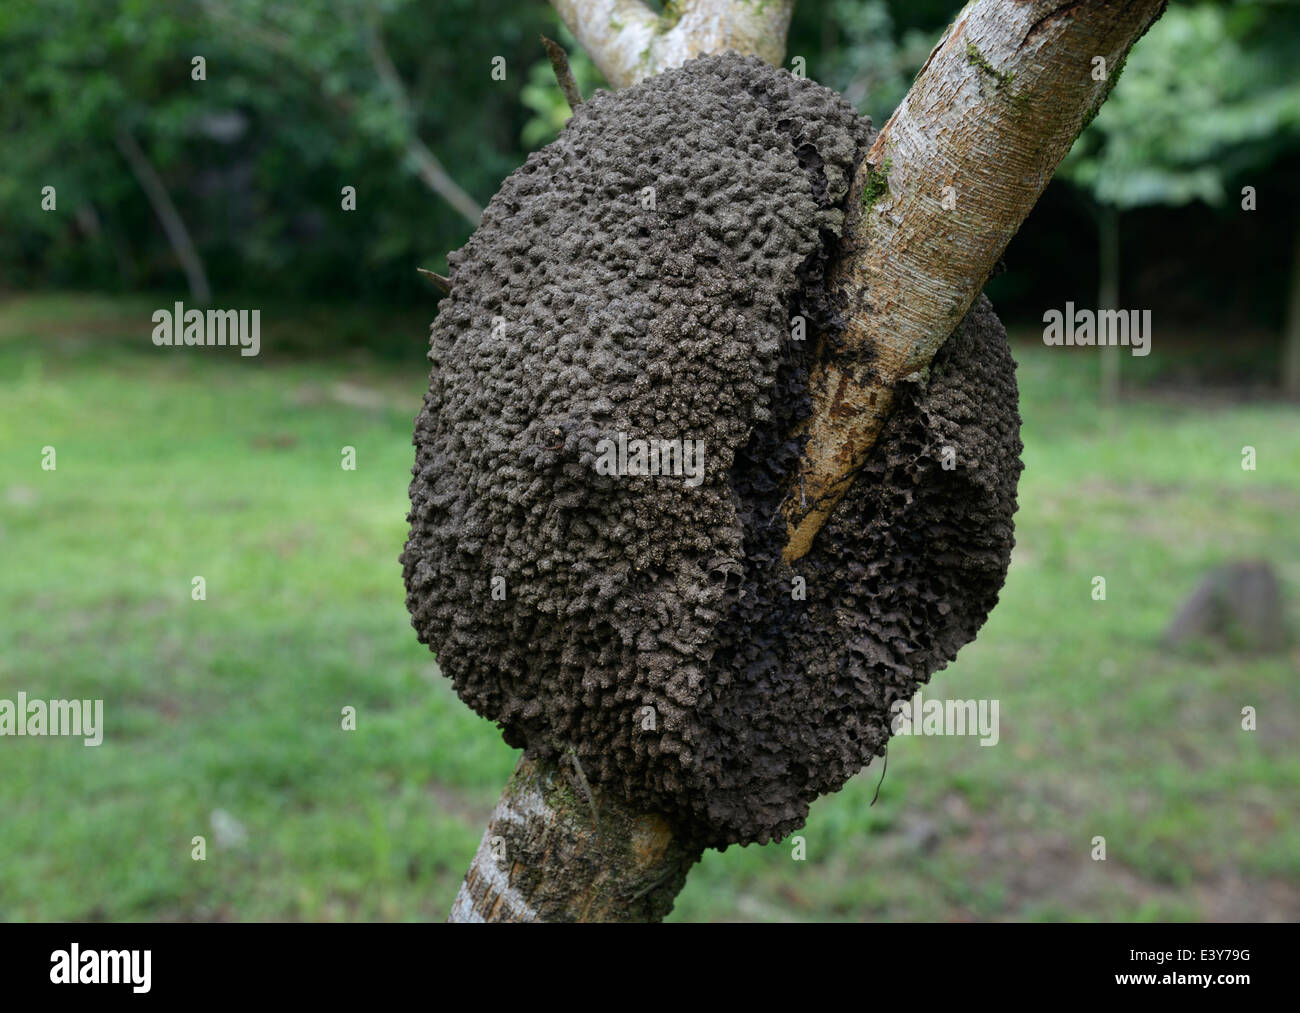 Termite nest, Chilamate, Costa Rica Stock Photo